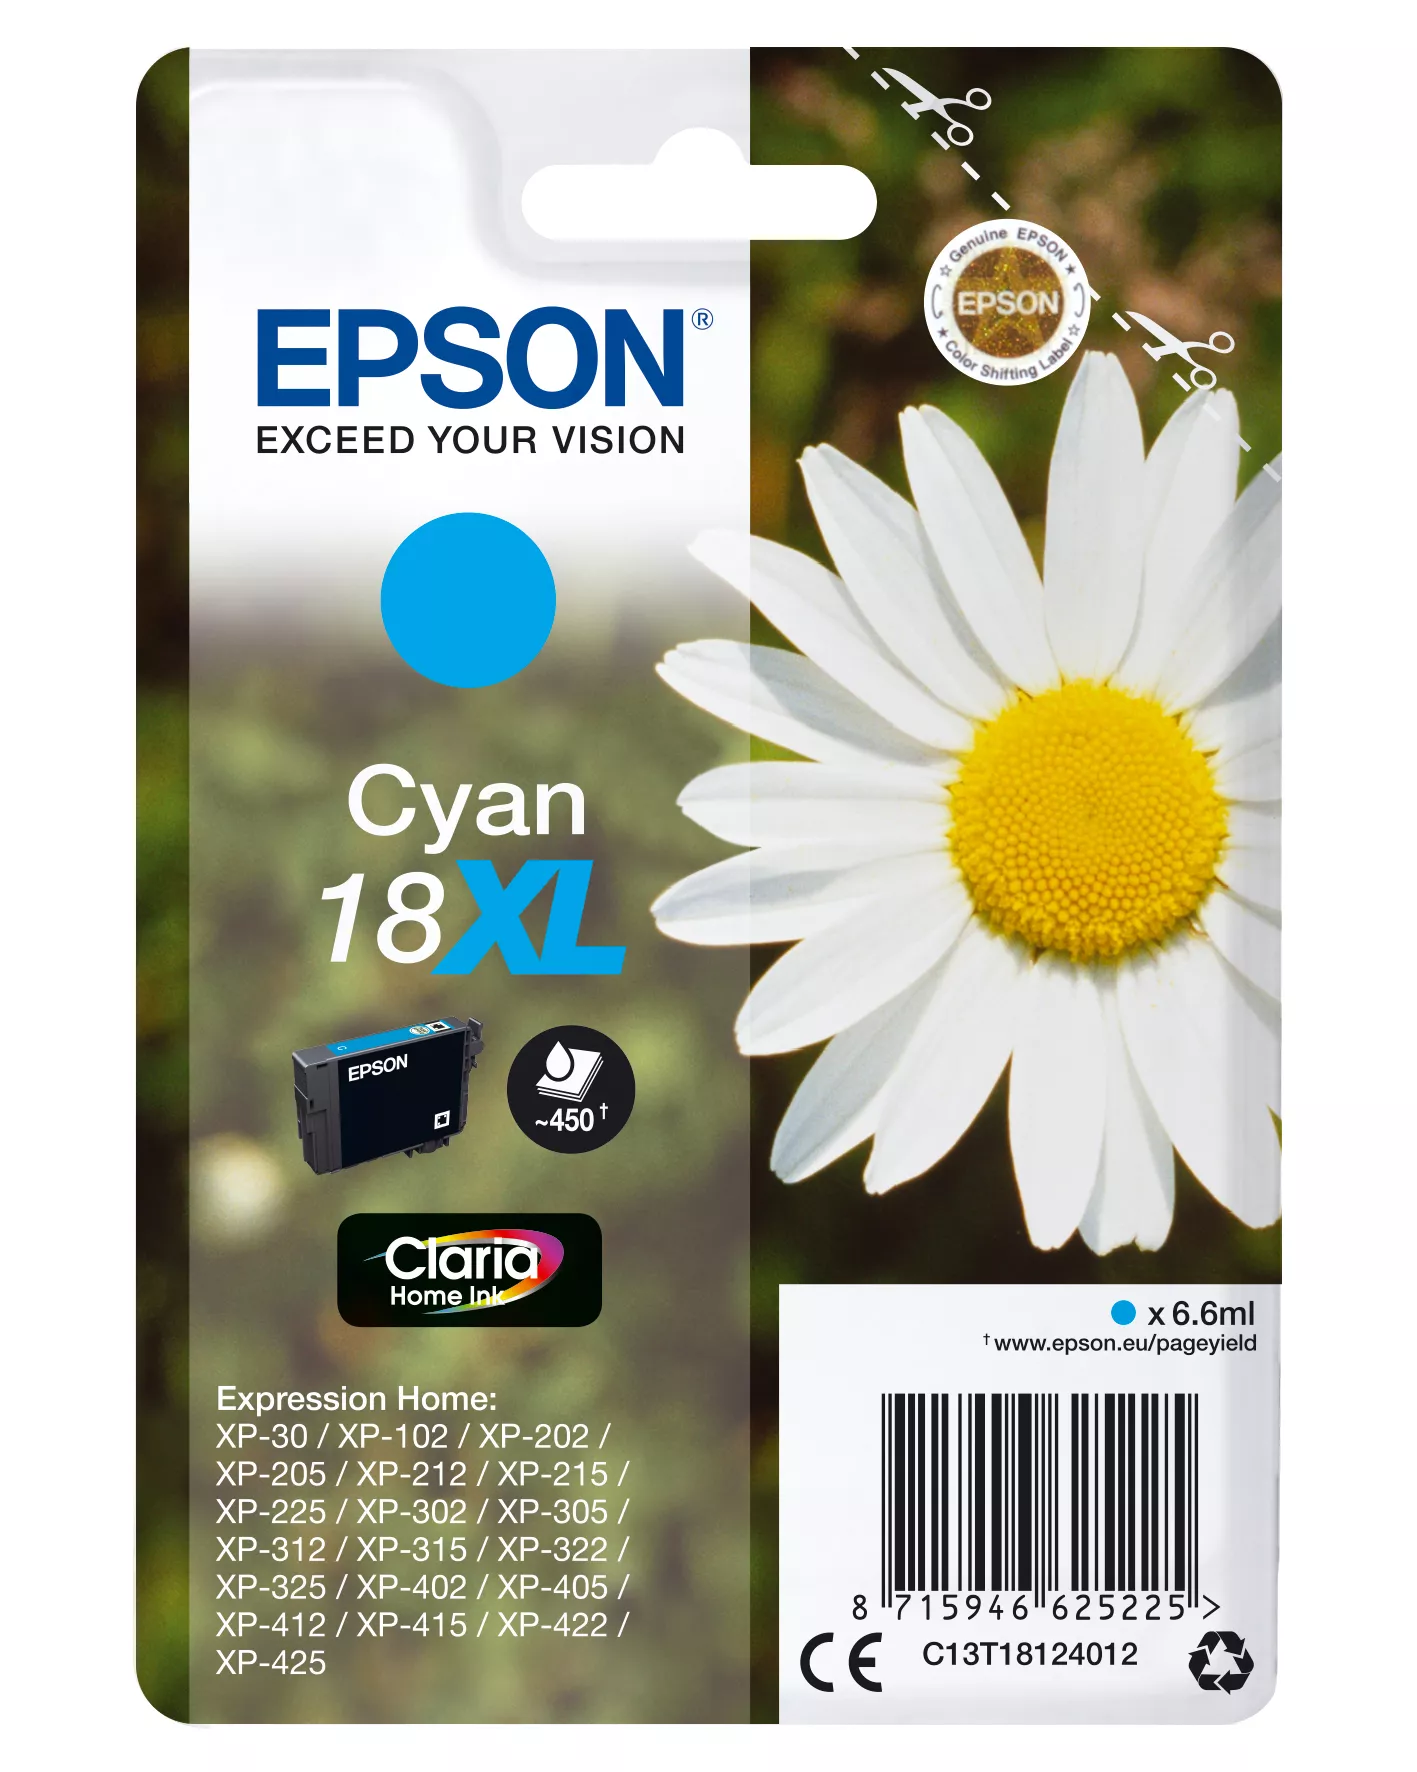 Achat EPSON 18XL cartouche encre cyan haute capacité 6.6ml 450 au meilleur prix